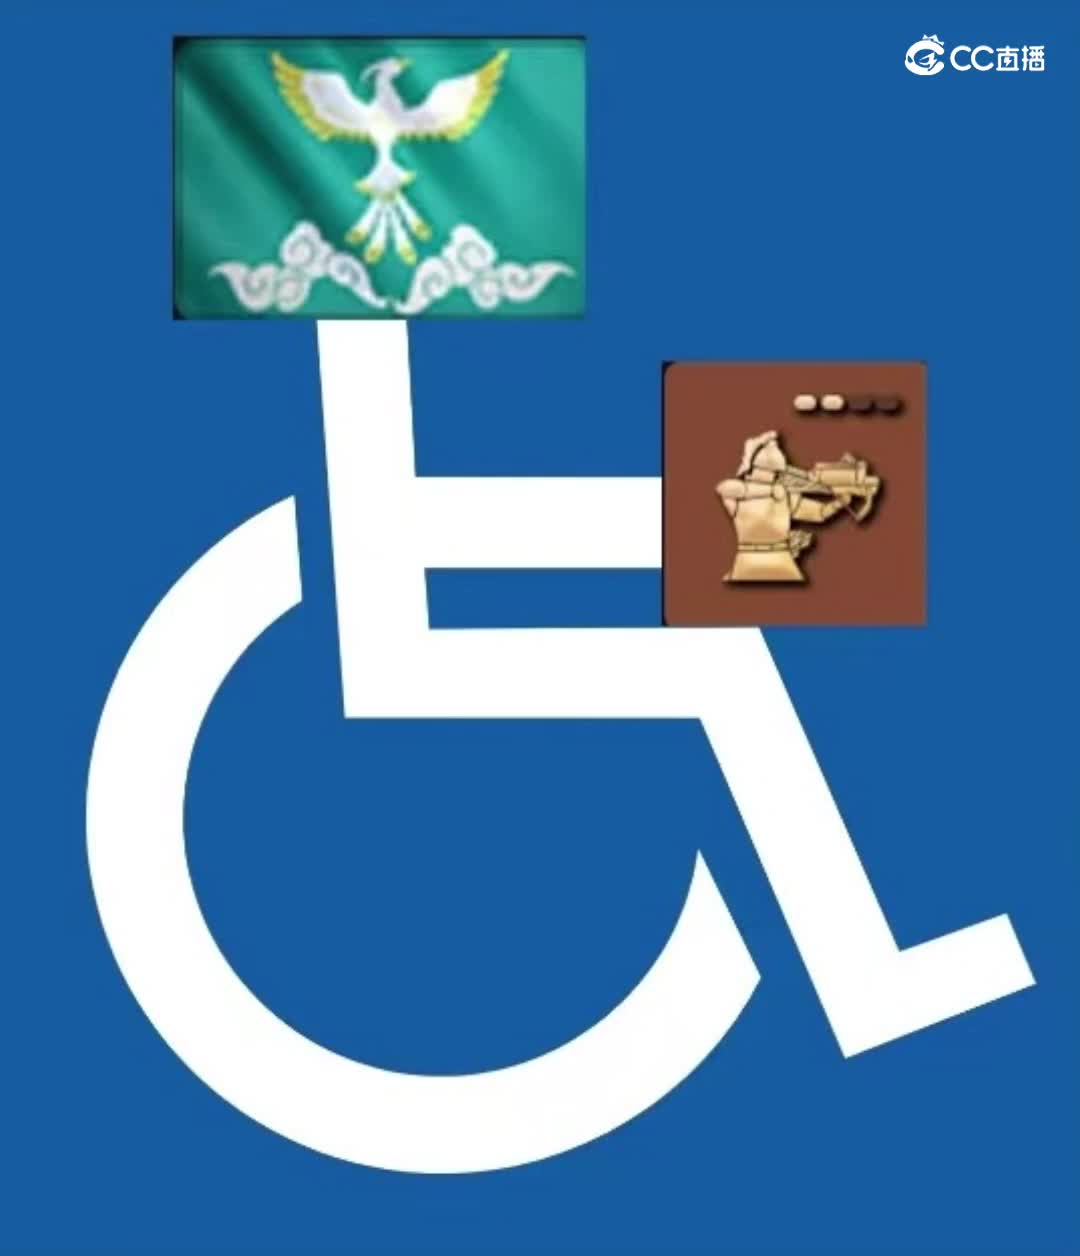 帝国时代4，属于轮椅文明？